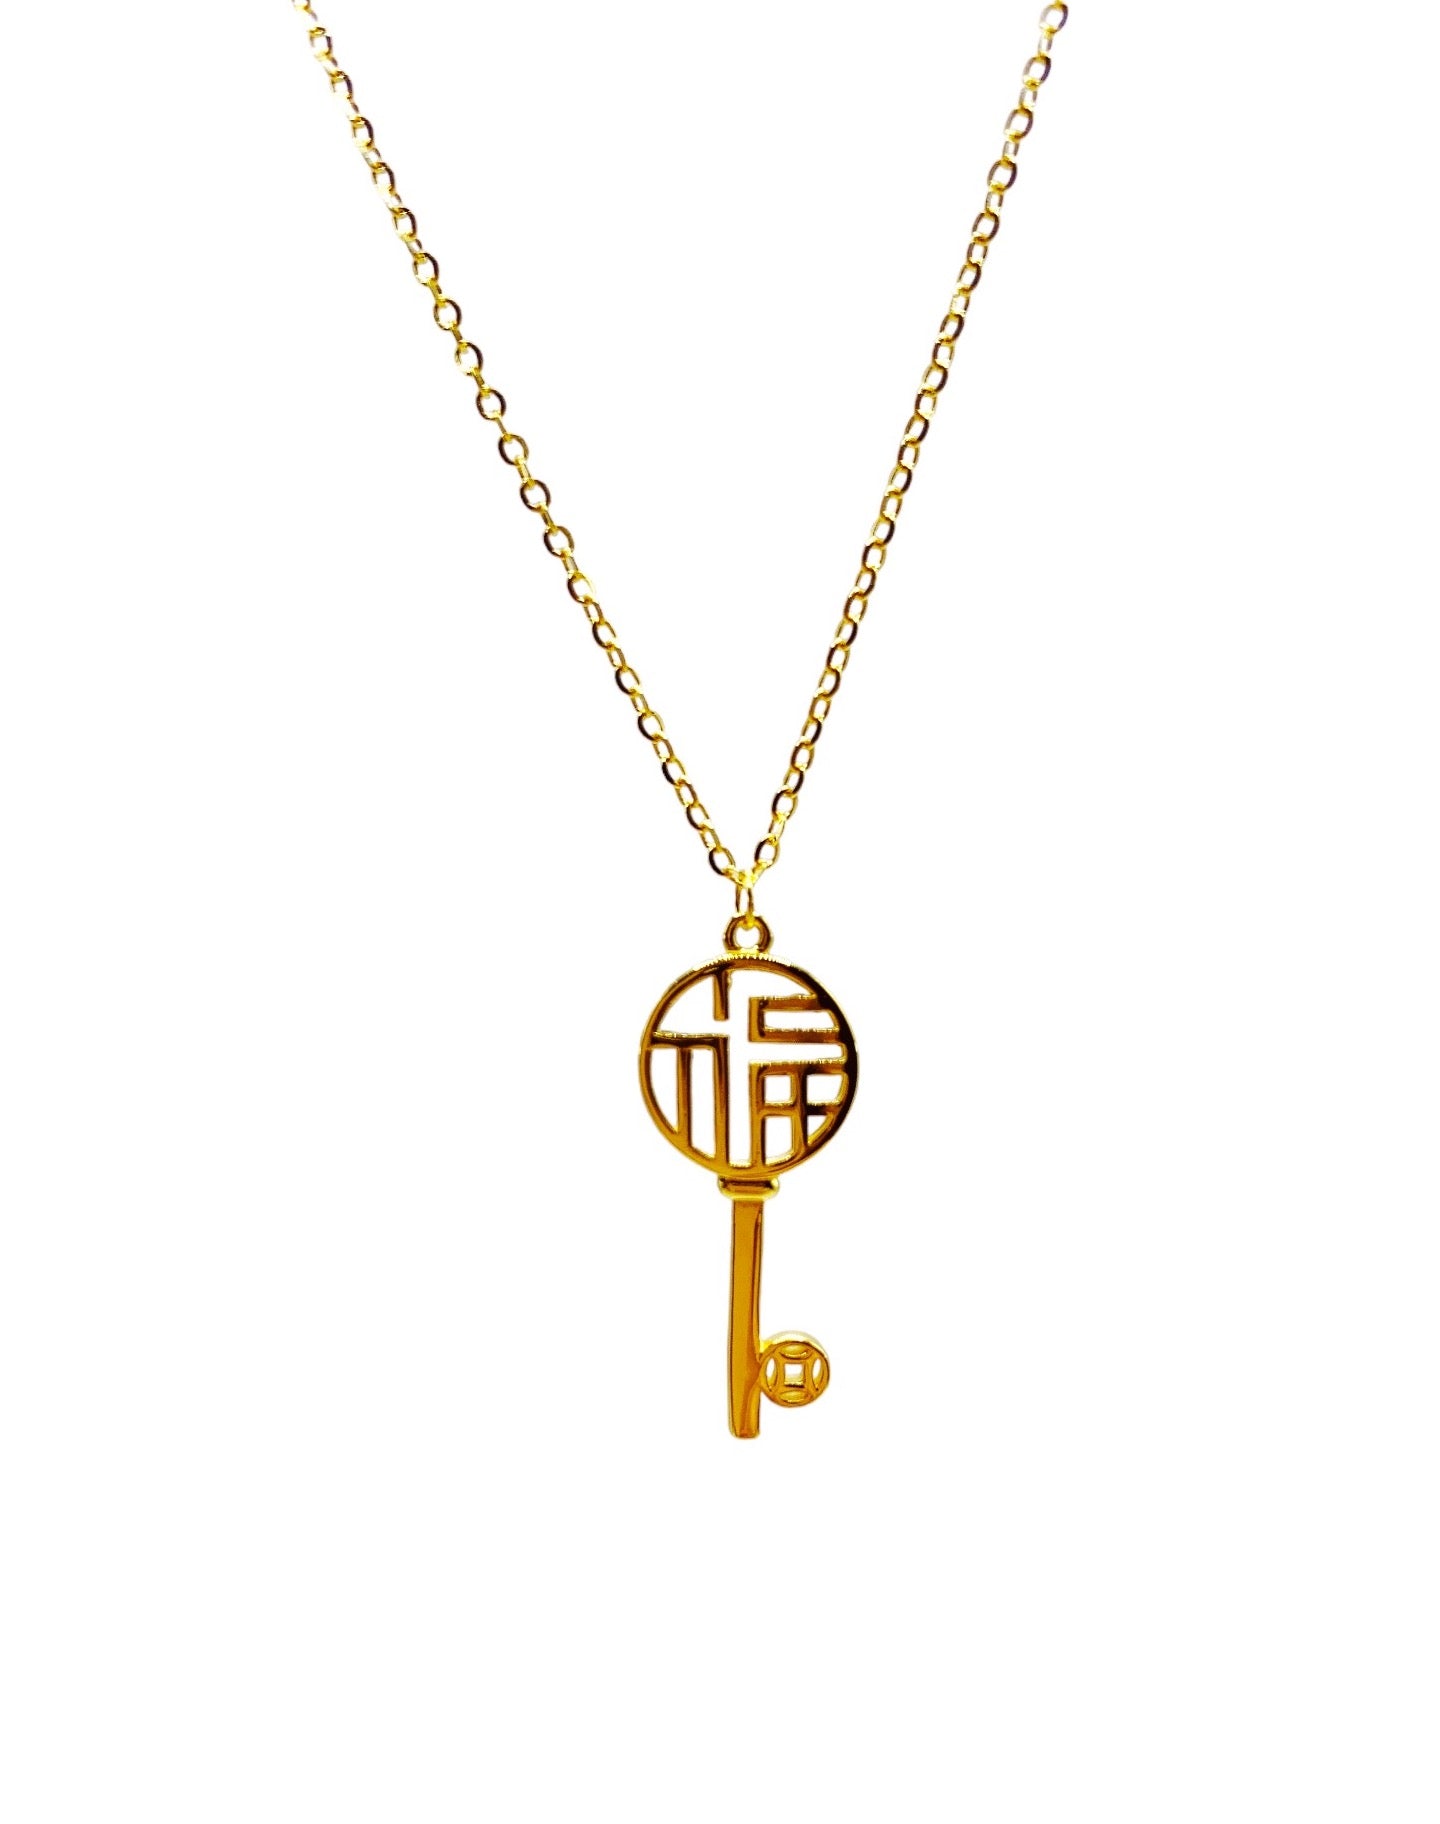 TJ 916 FU Key Necklace